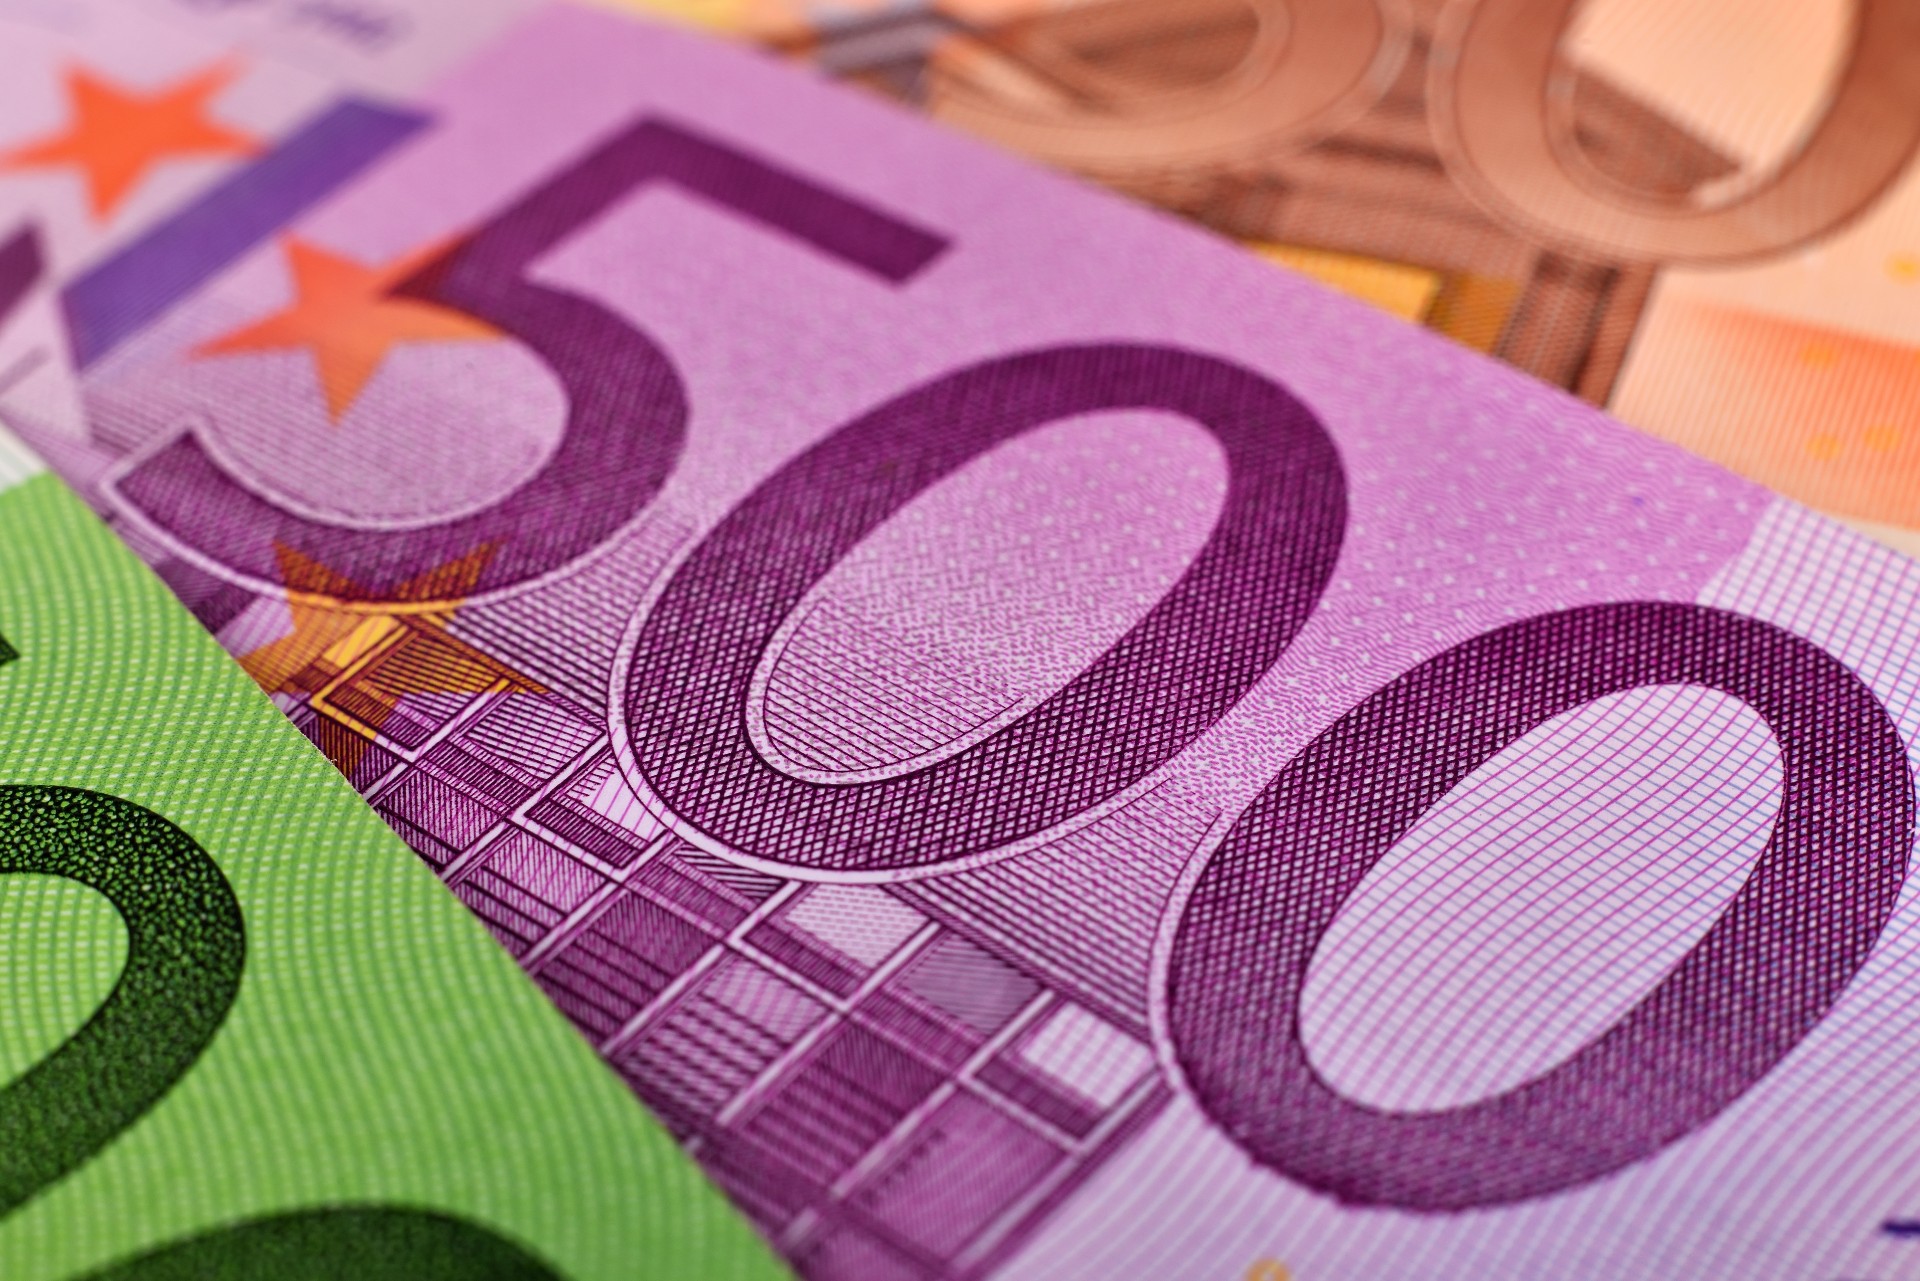 Πάνω από 1 δισ. ευρώ αποπλήρωσαν οι μικρομεσαίοι, για να γλυτώσουν τόκους